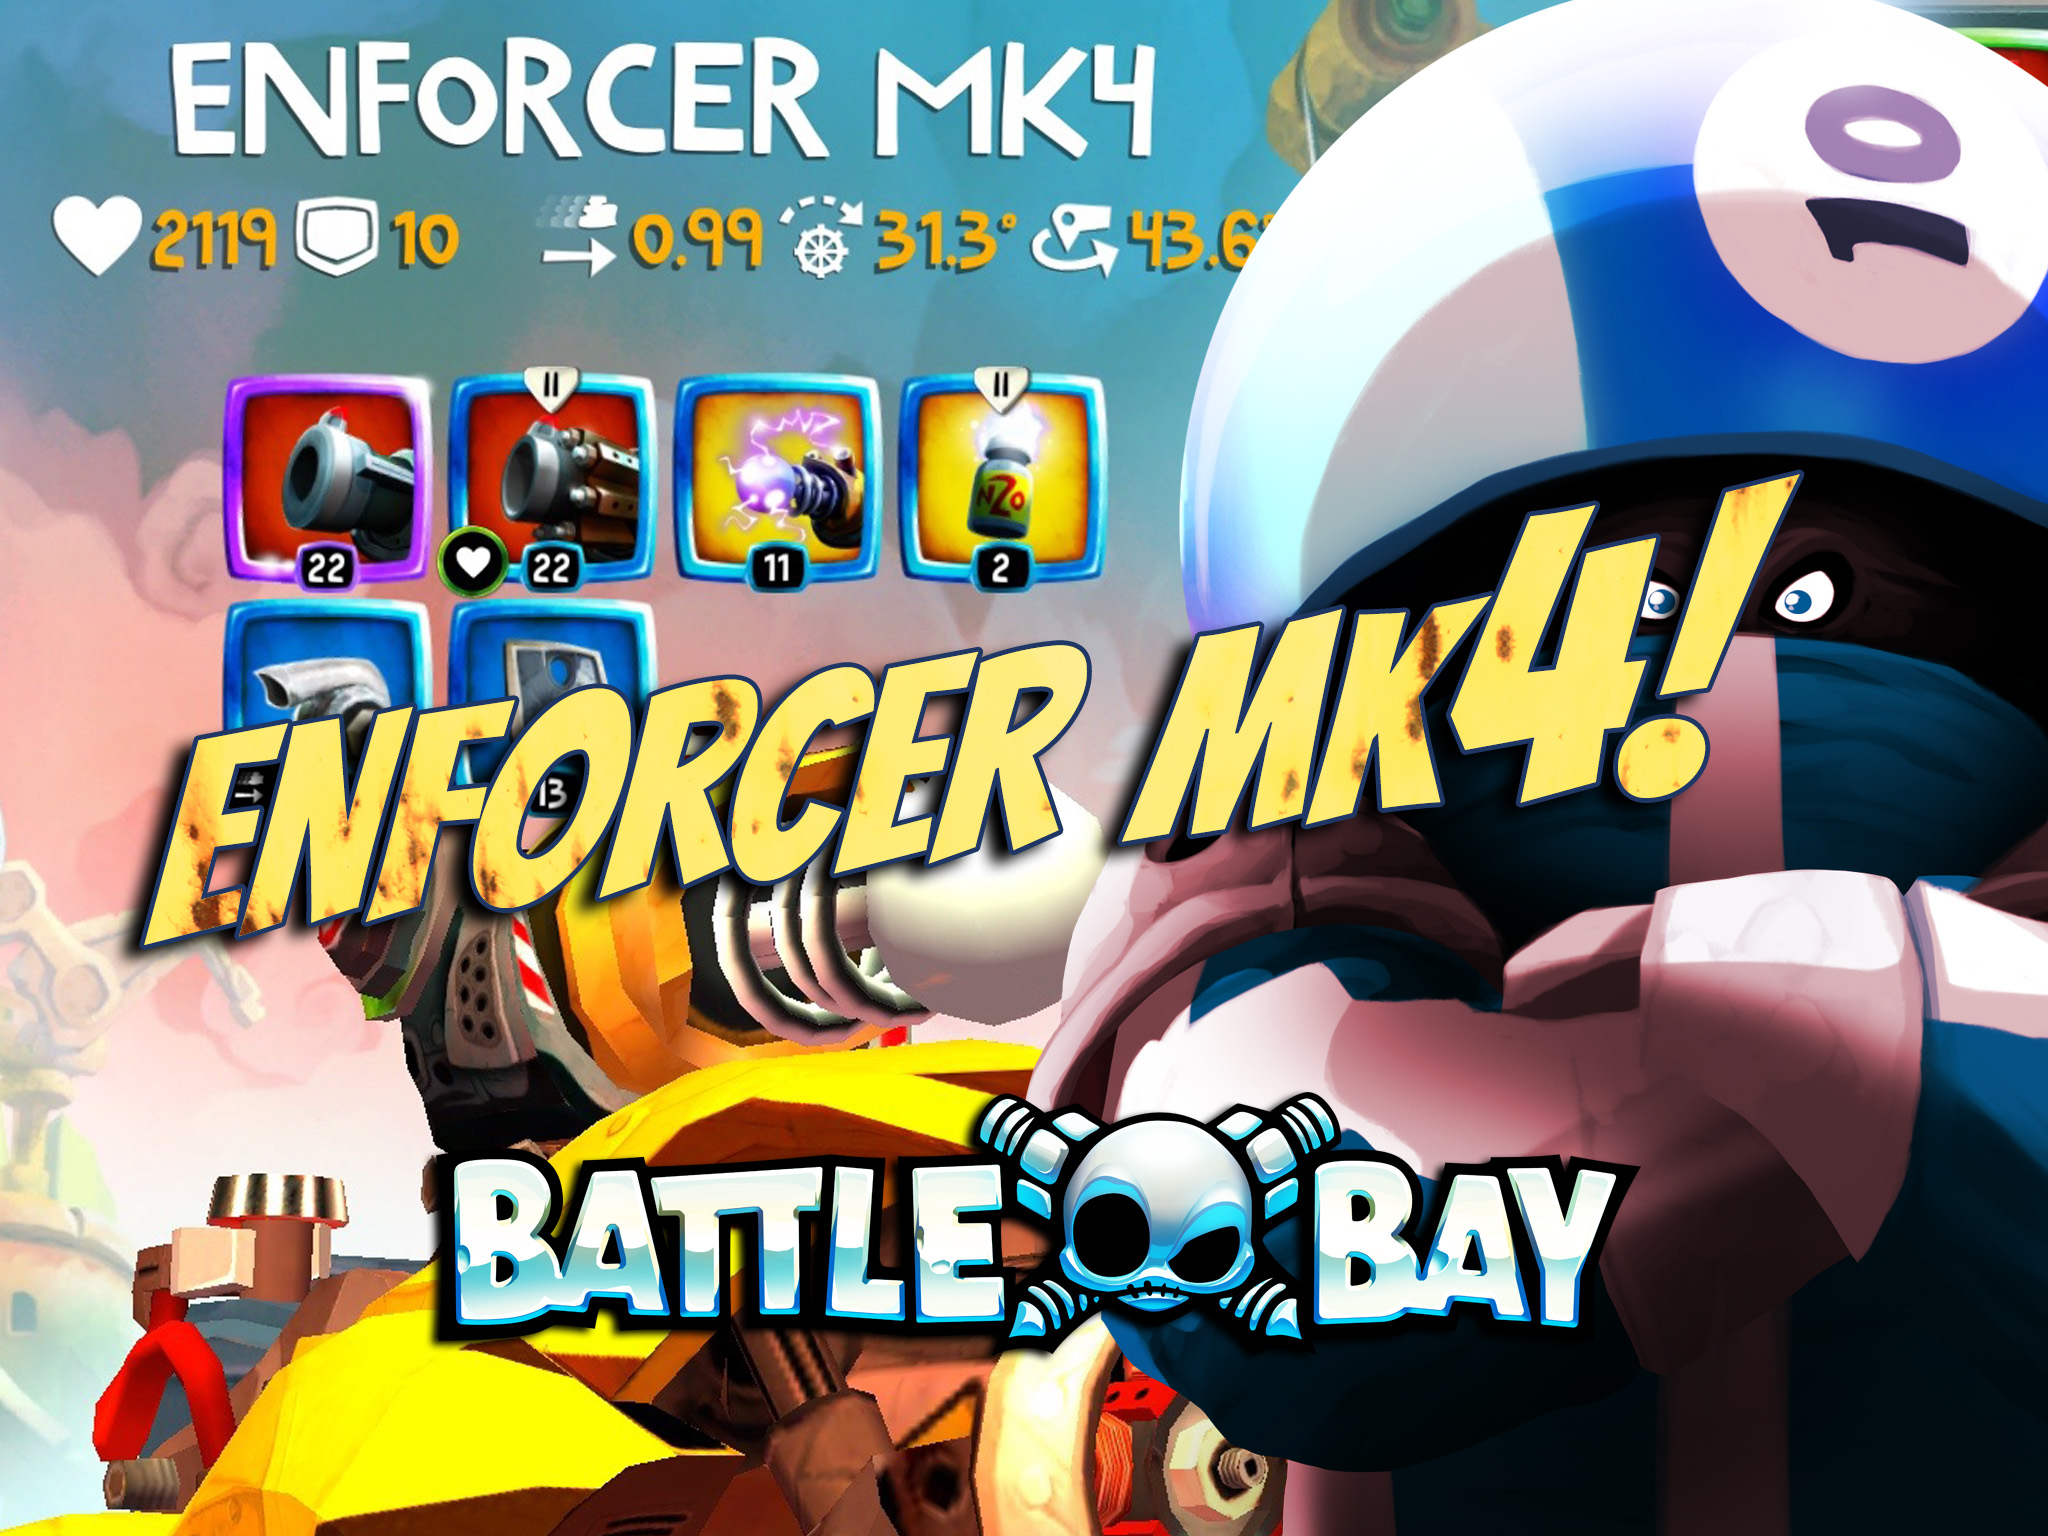 Battle Bay Enforcer MK4